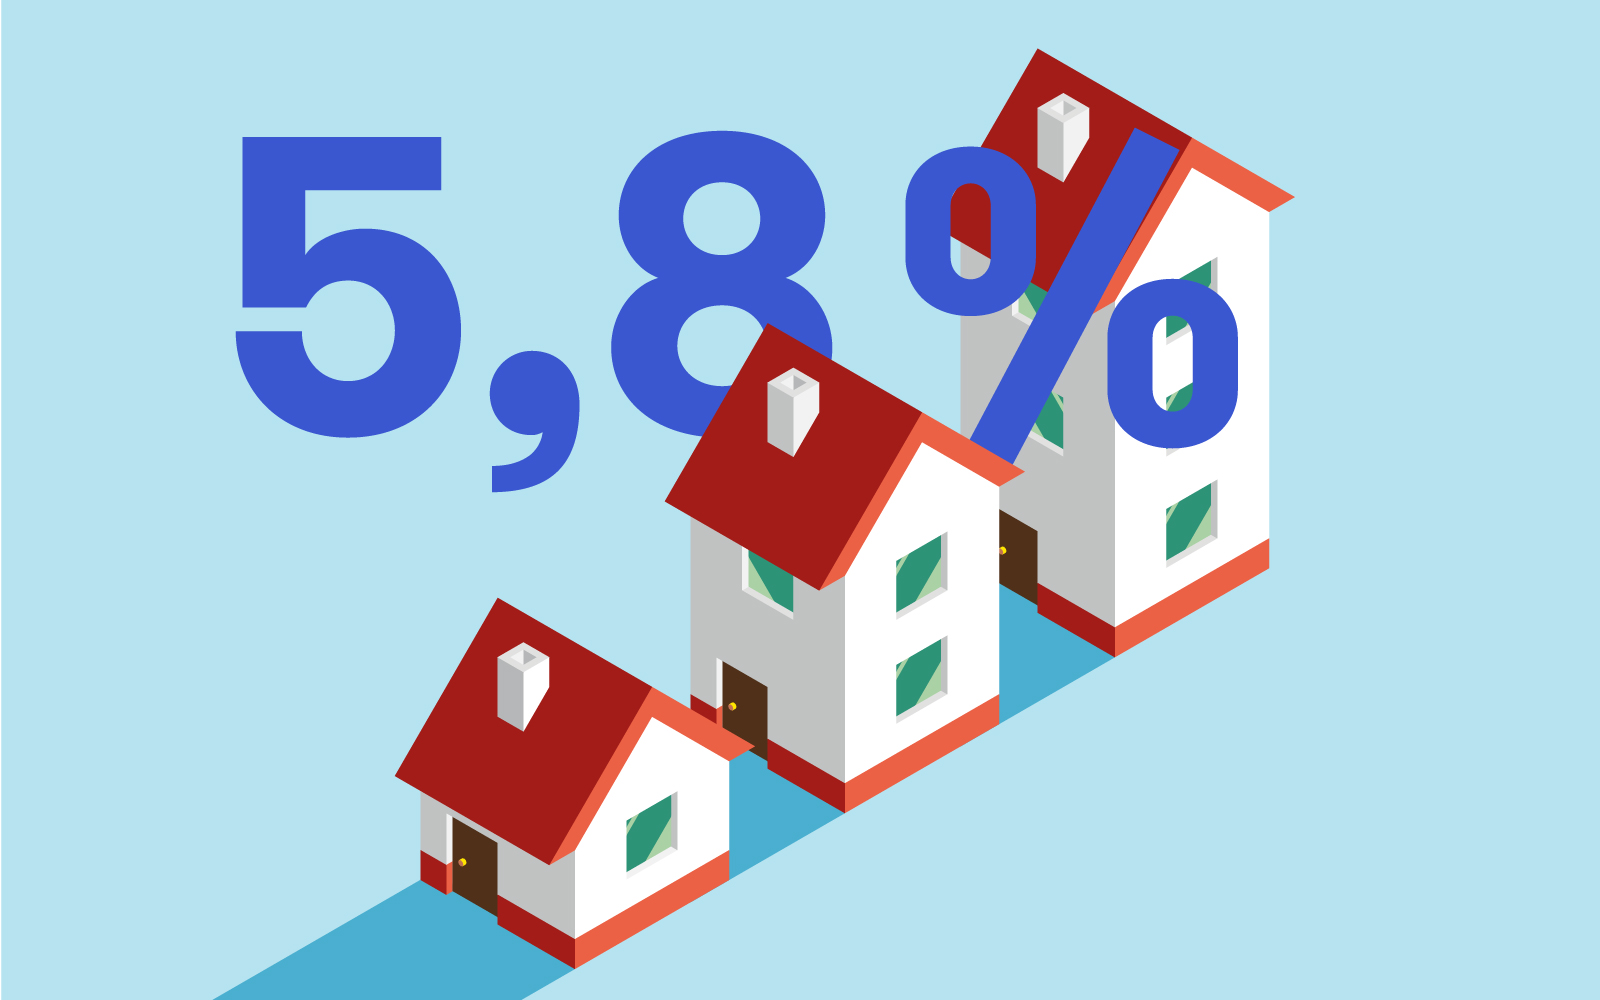 Wohnimmobilien wurden im Jahr 2019 um 5,8% teurer.